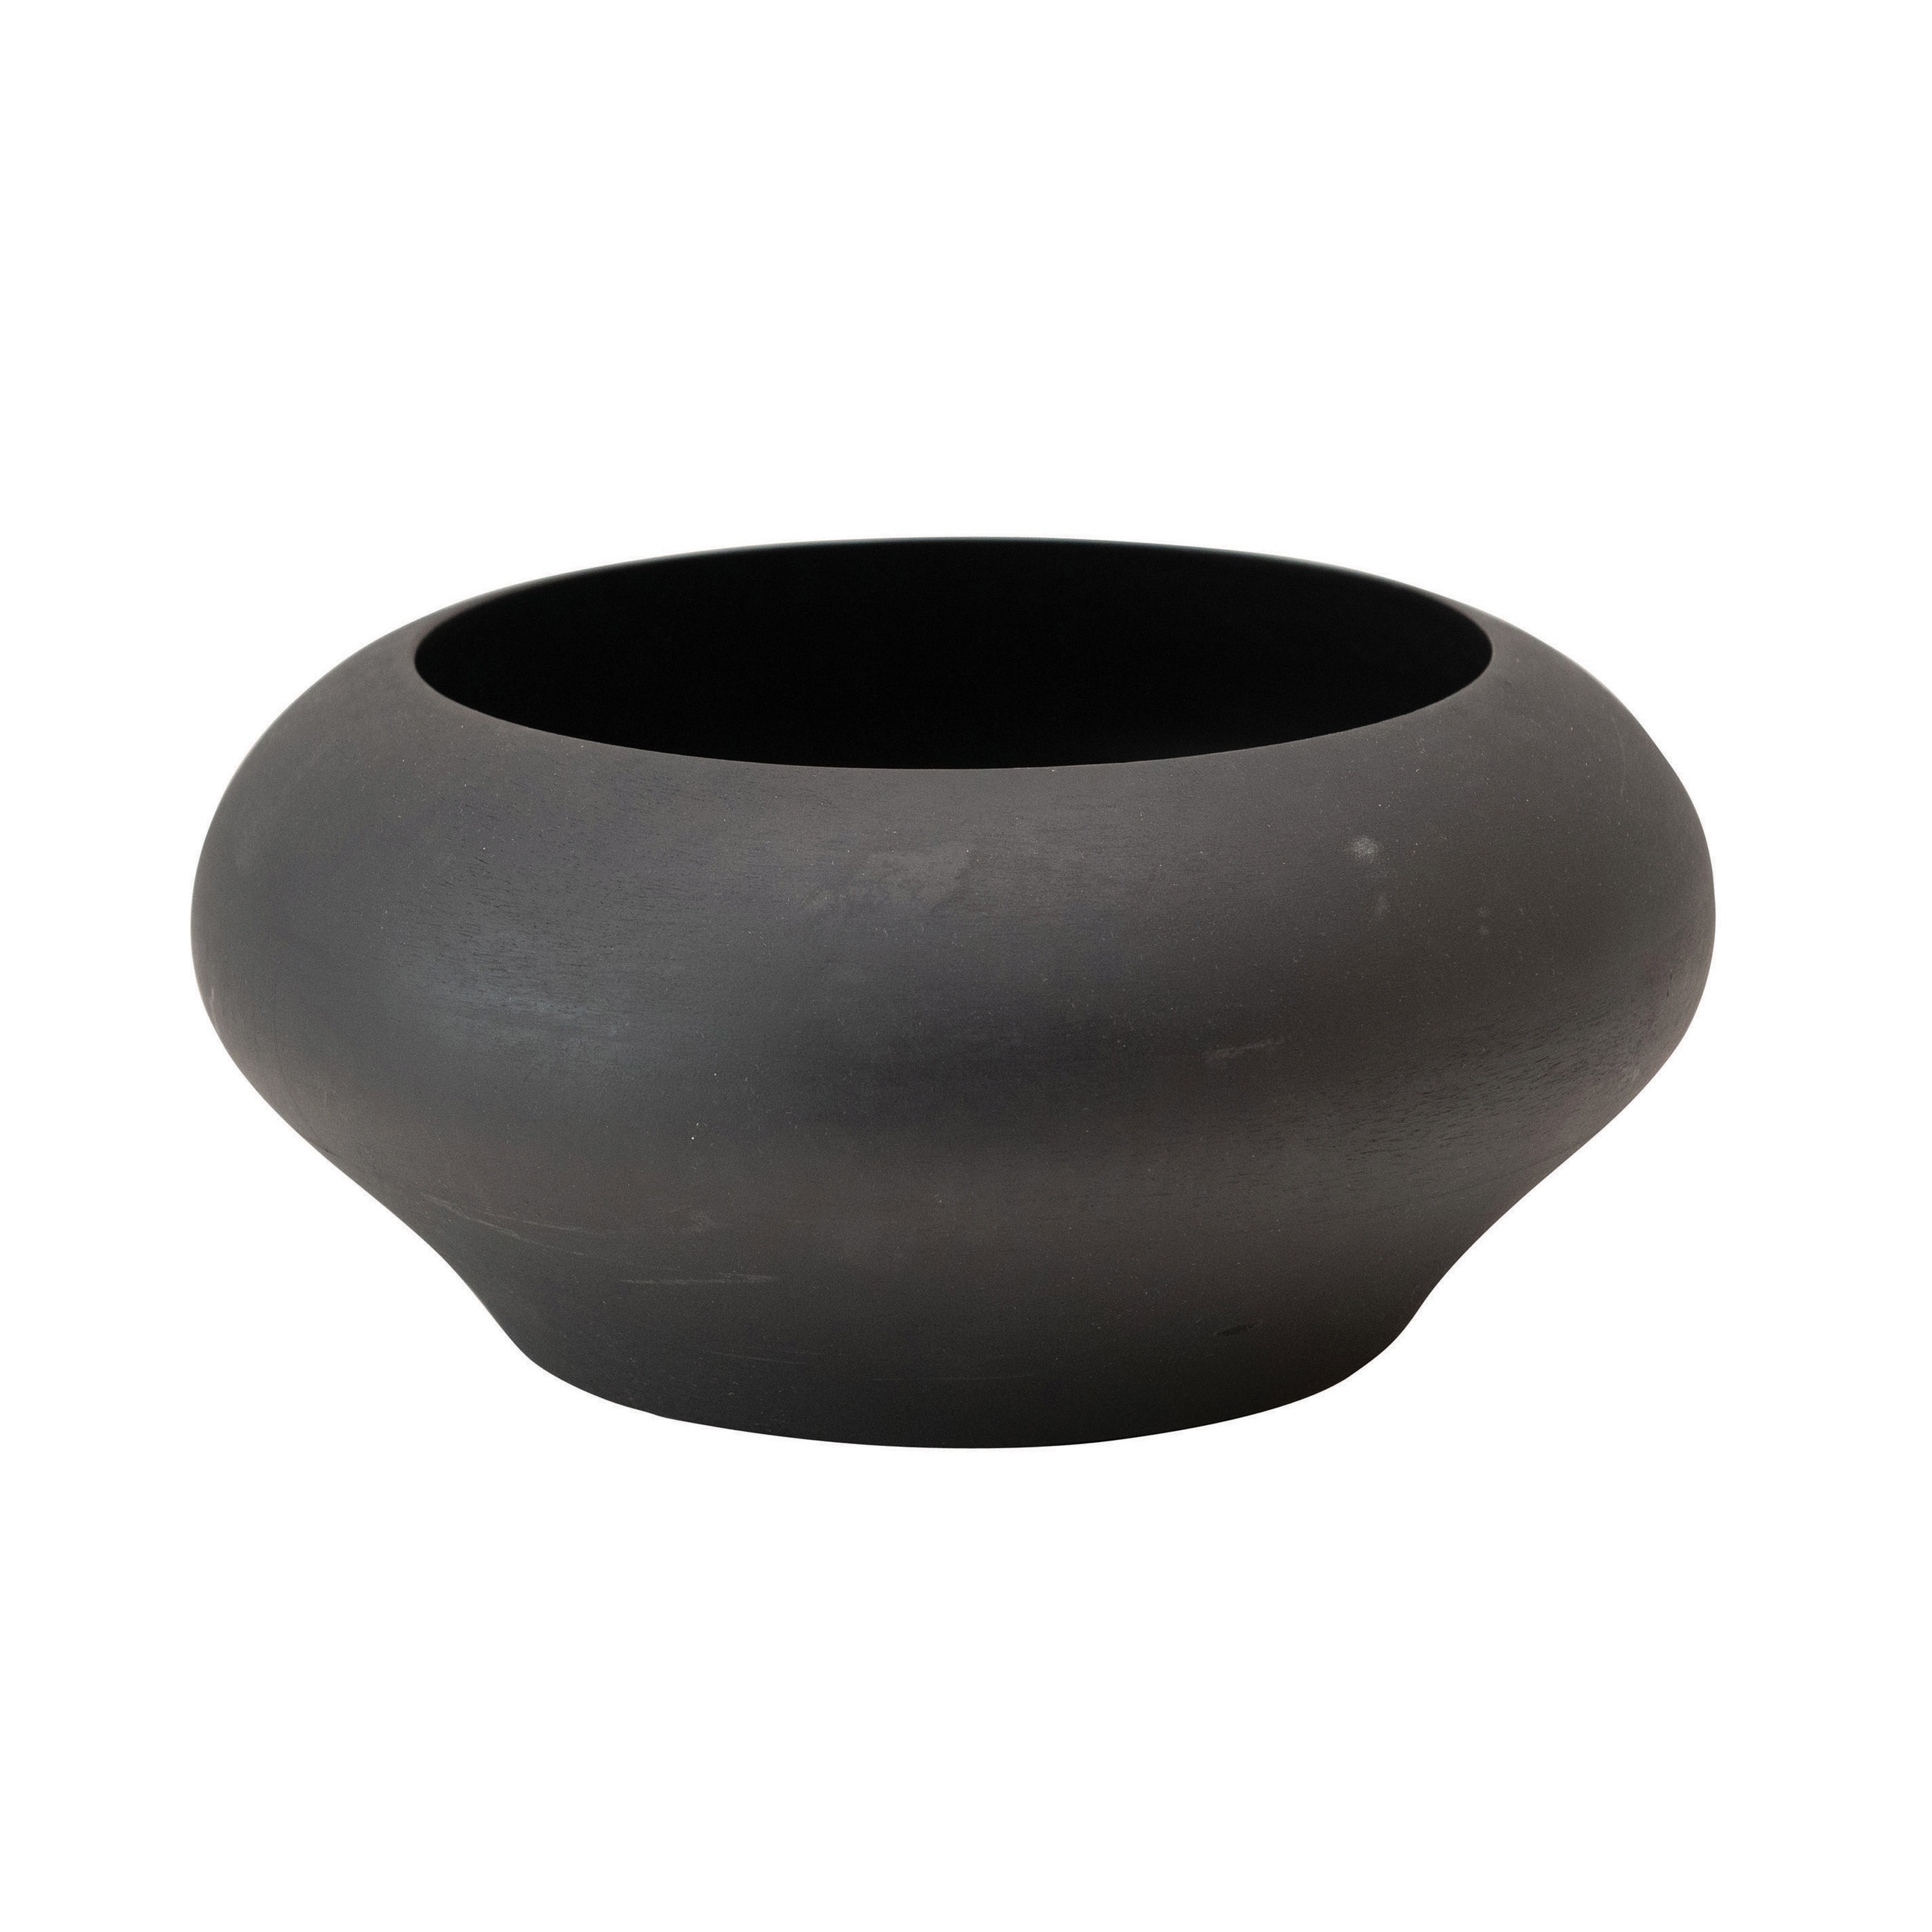 Mango Wood Bowl, Black - Image 0